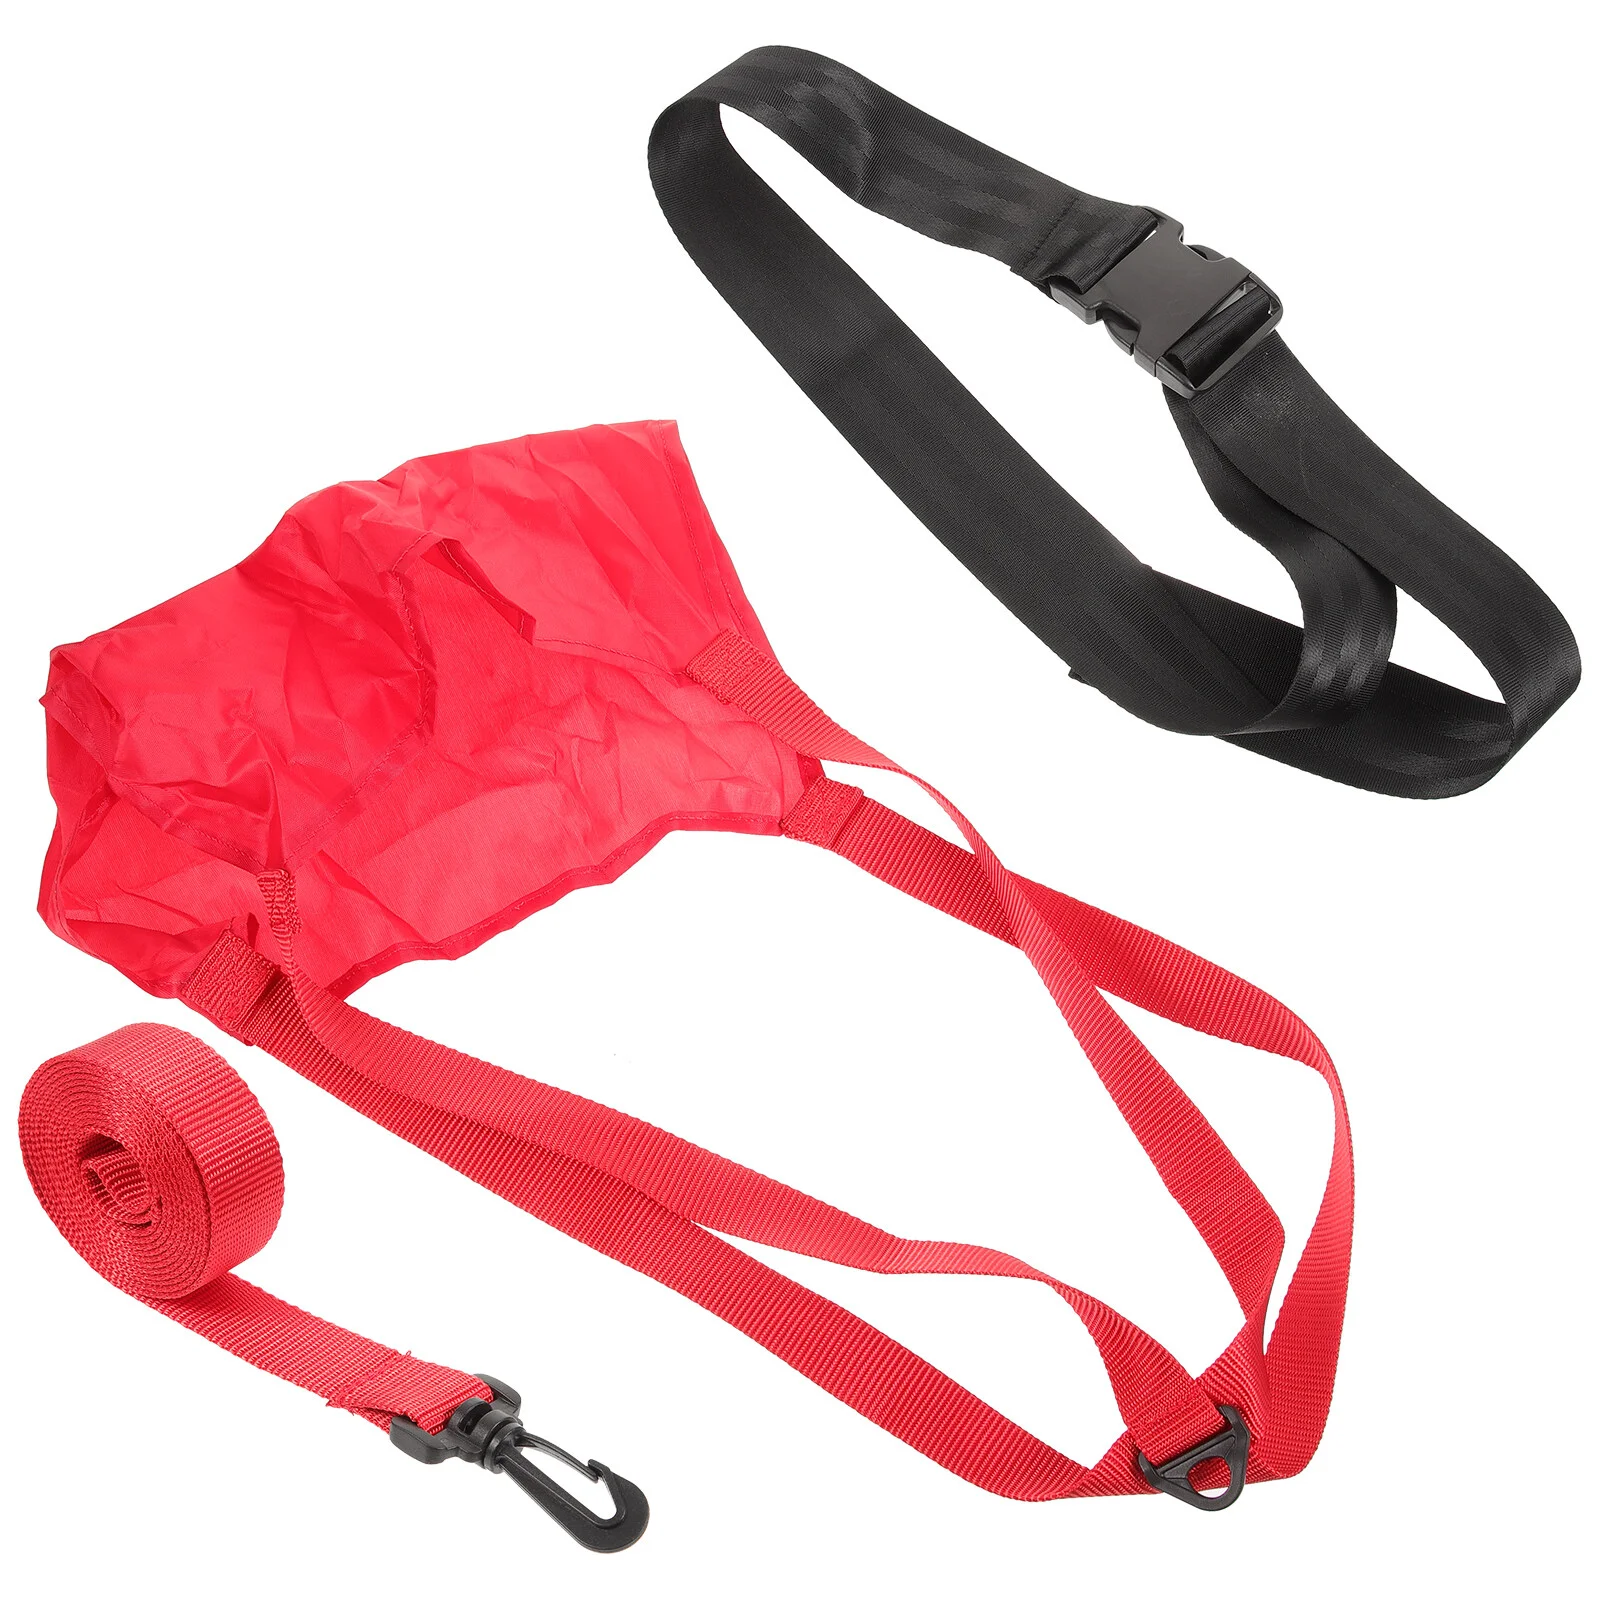 

Парашют для плавания, оборудование для тренировок, прочный эластичный ремень, 1 шт. (красный) Статический эластичный костюм, набор принадлежностей, лента